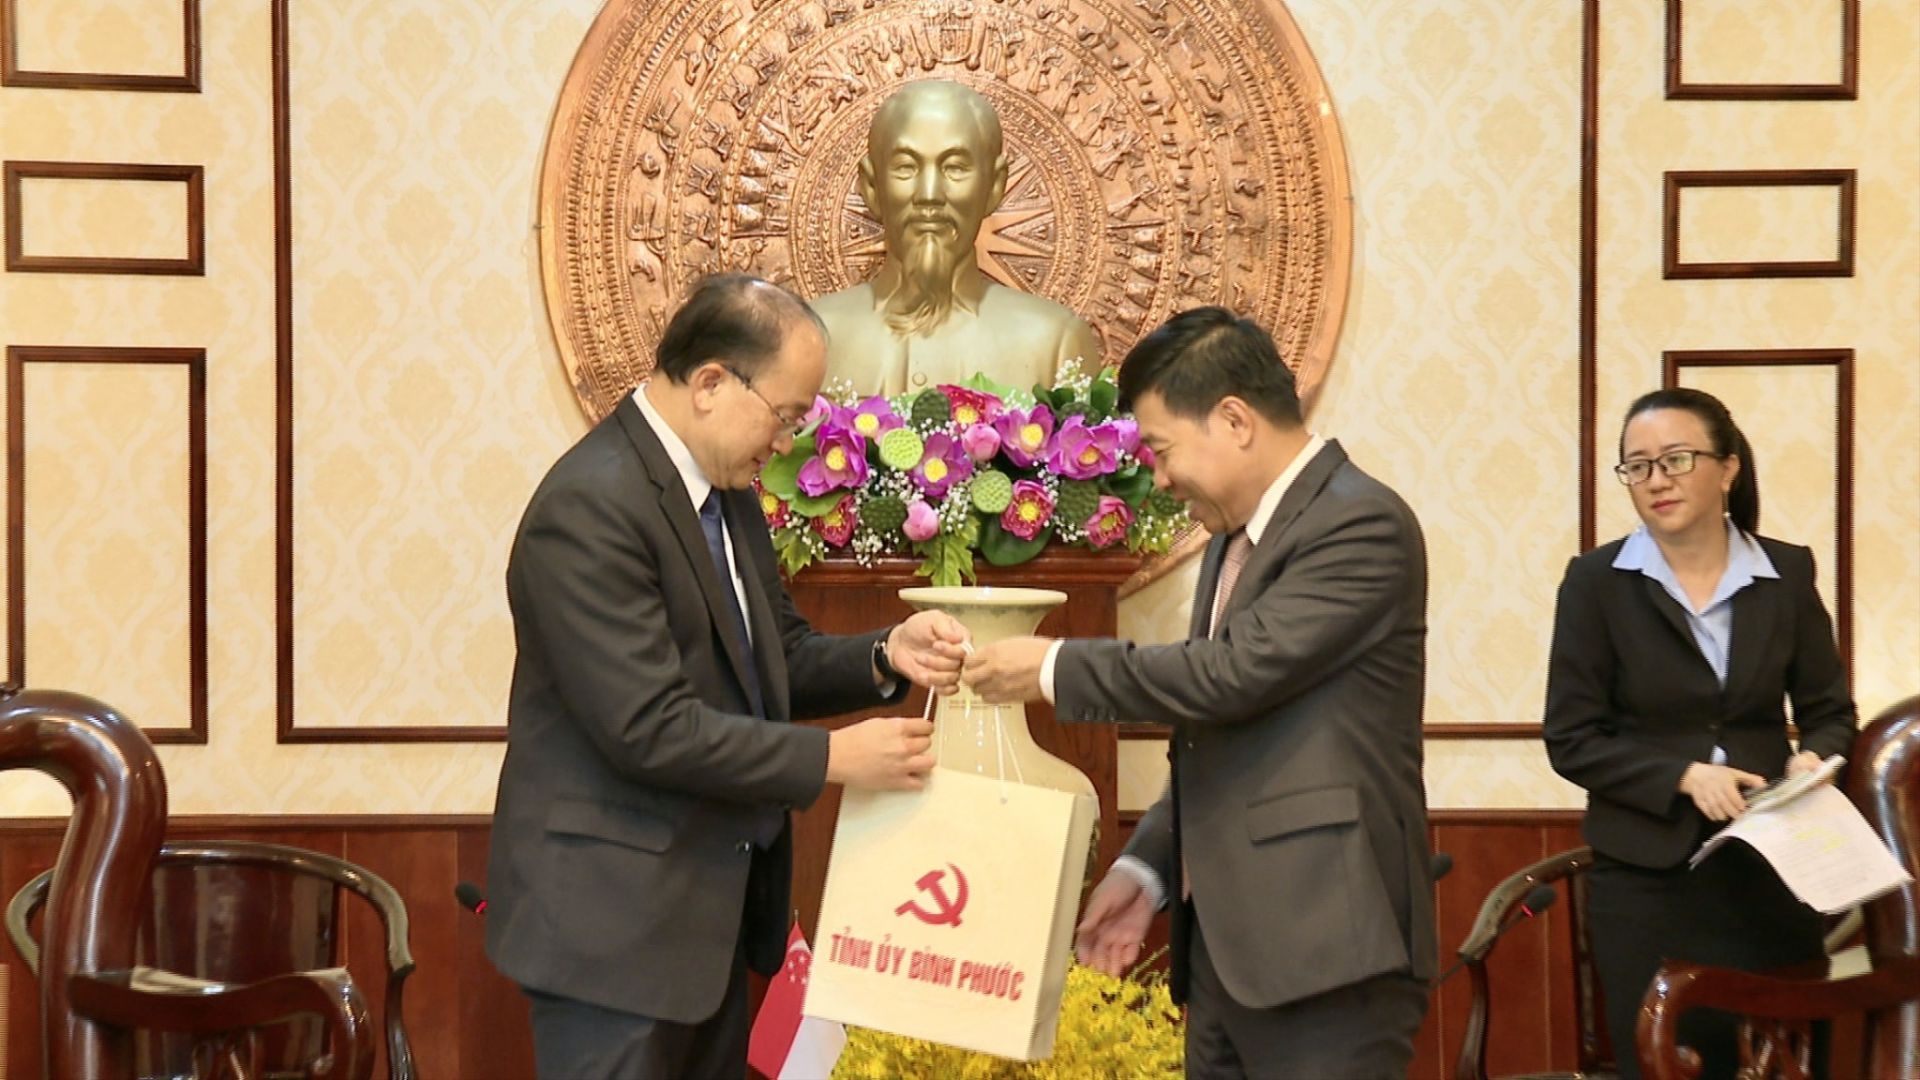 Tại buổi đón tiếp, những phần quà lưu niệm đã được Bí thư Tỉnh ủy Nguyễn Mạnh Cường và ông Kho Ngee Seng Roy trao cho nhau